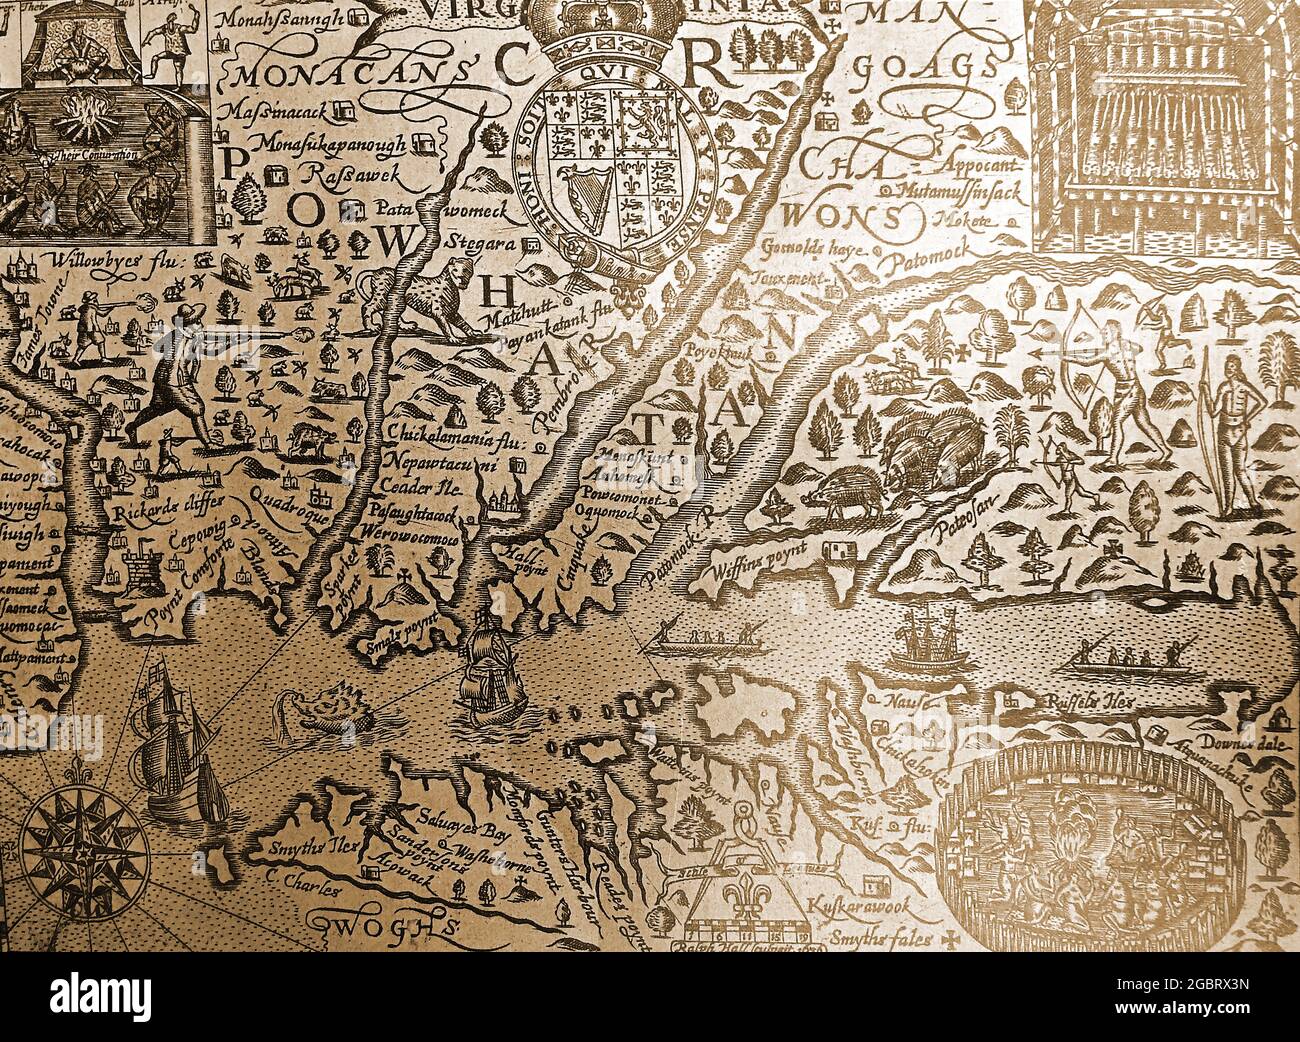 Un mapa detallado de principios del siglo 17th del estado estadounidense de Virginia con nombres originales de lugares, nombres nativos indios y ortografía original. Foto de stock